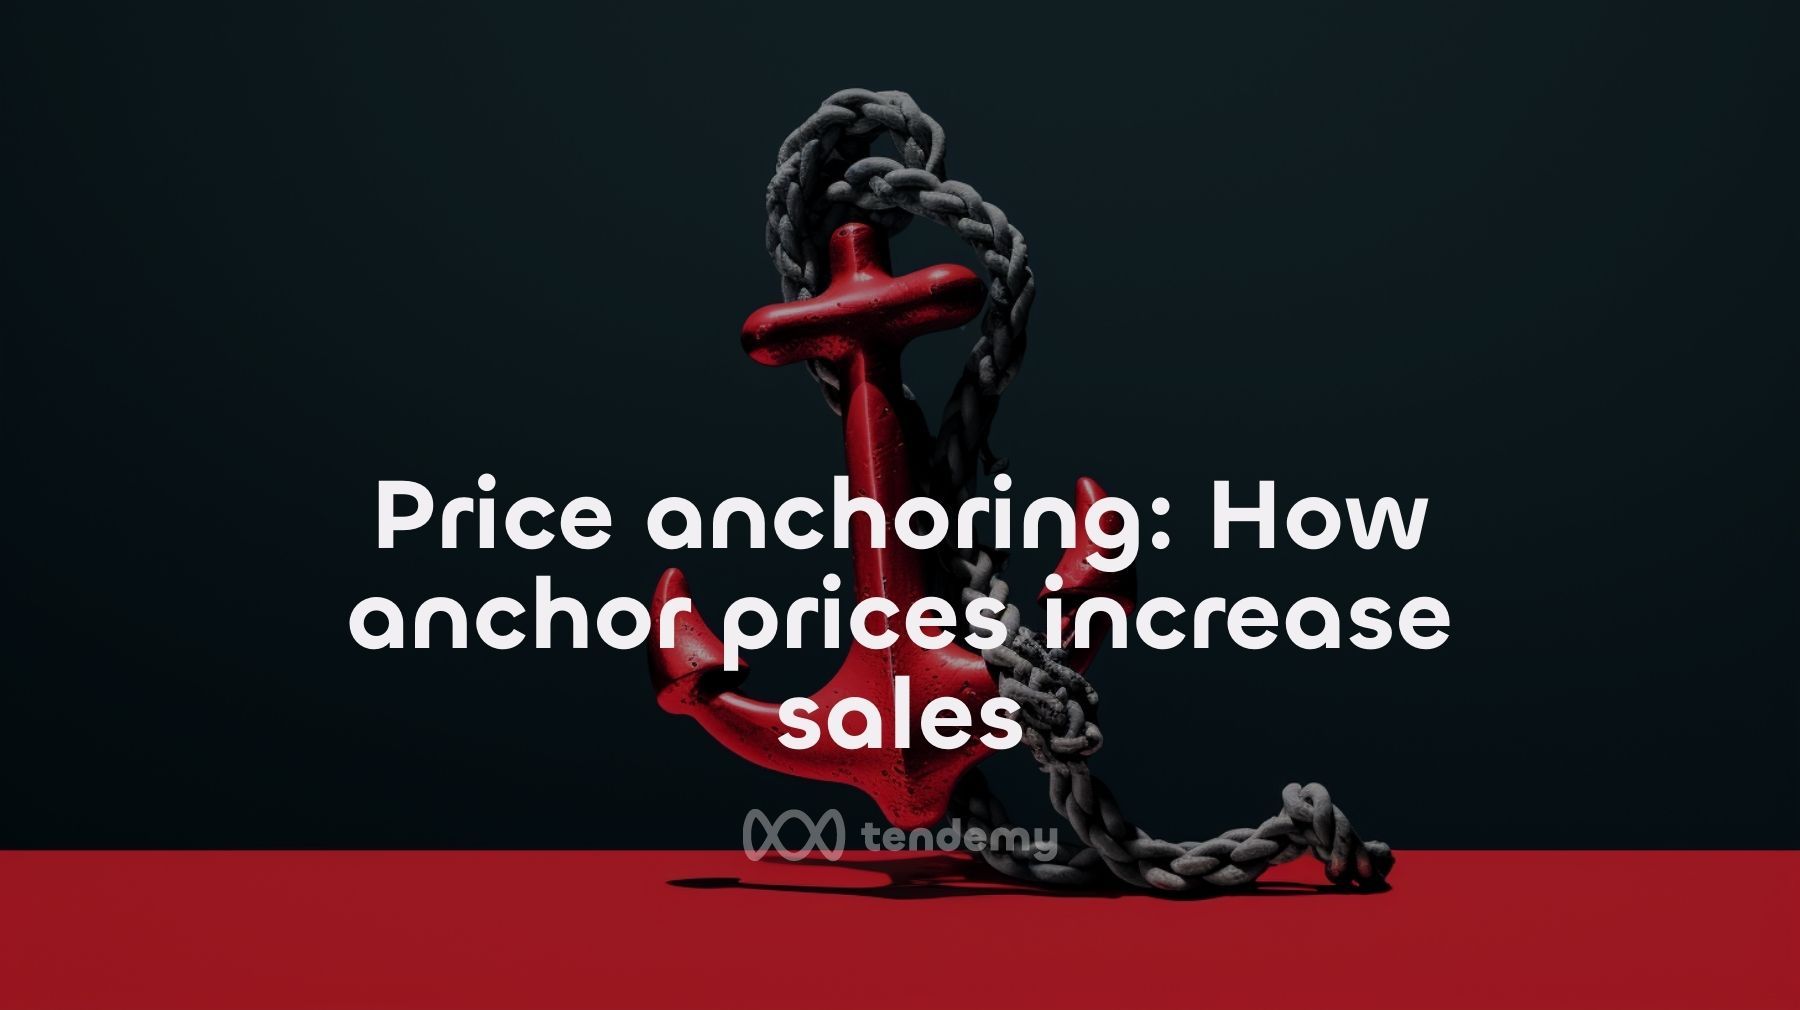 來聊聊 Price Anchoring：如何透過錨定價格讓消費者爽快買單？